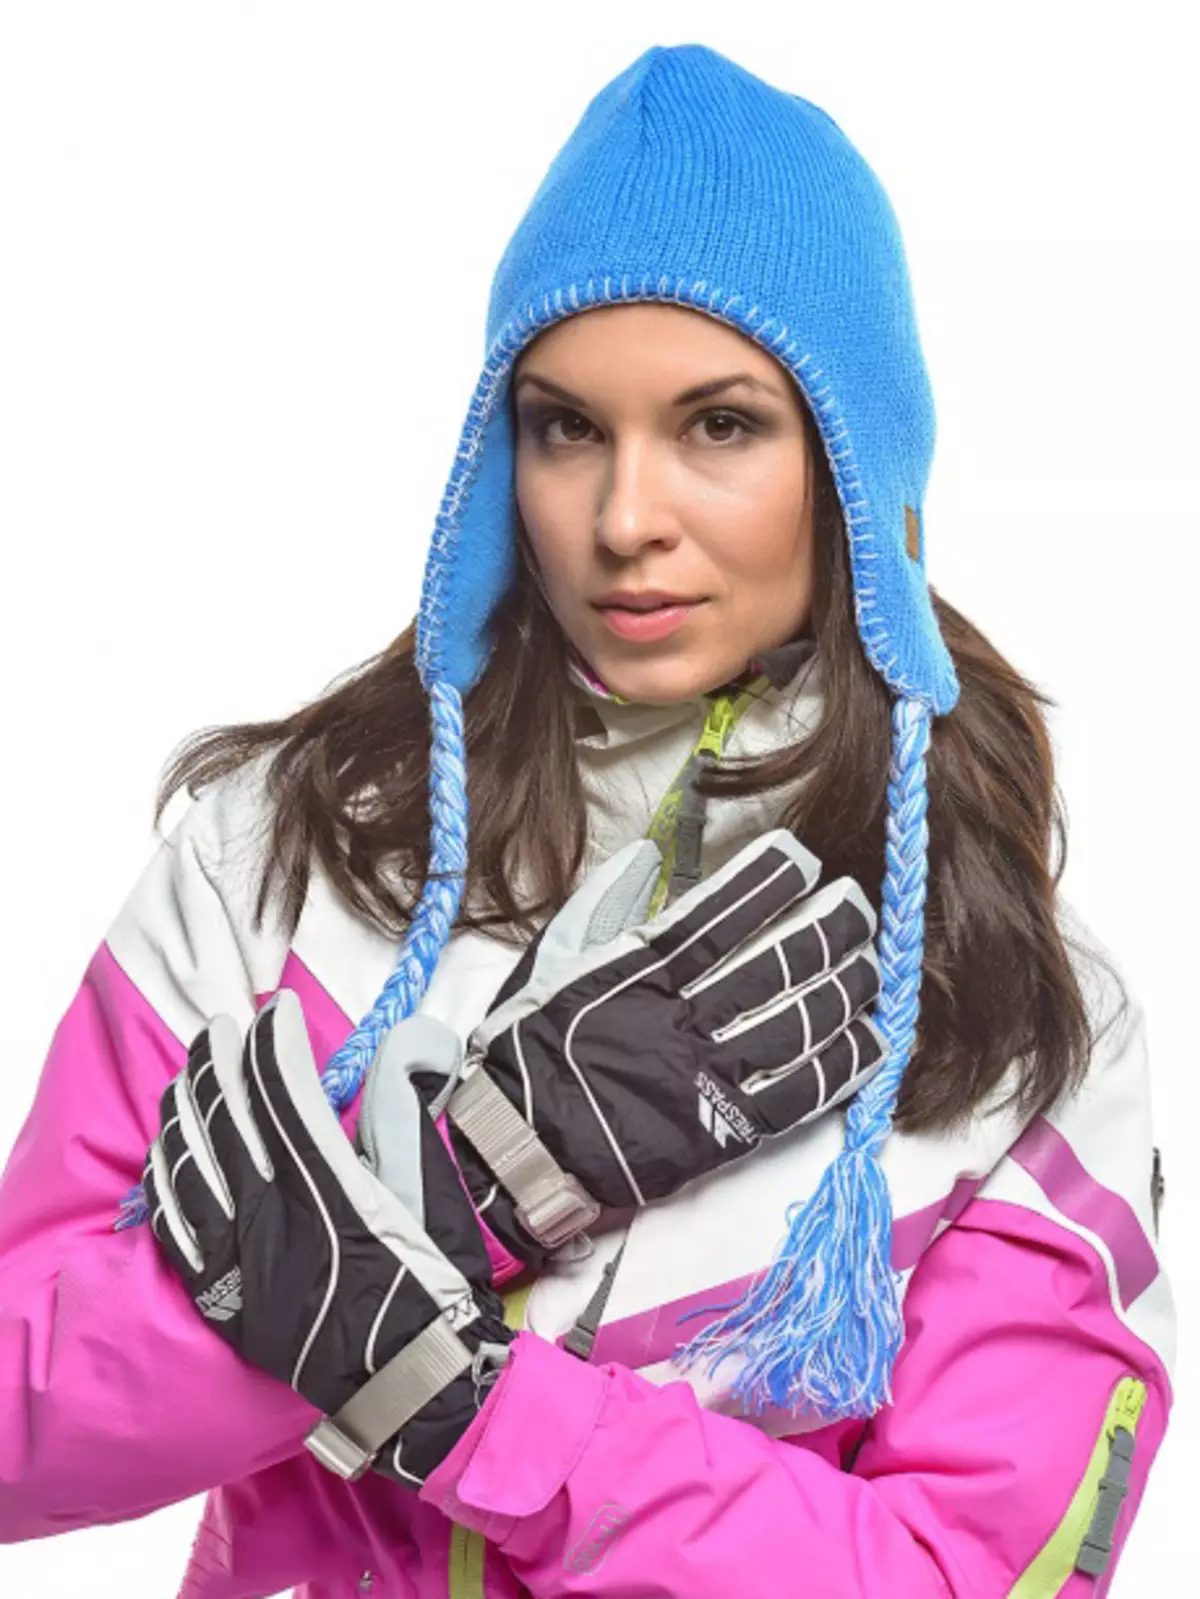 Skihandsker (61 billeder): Kvinders ski modeller til sport, oversigt over populære mærker - Reysshe, Head, Salomon, Leki 15203_31